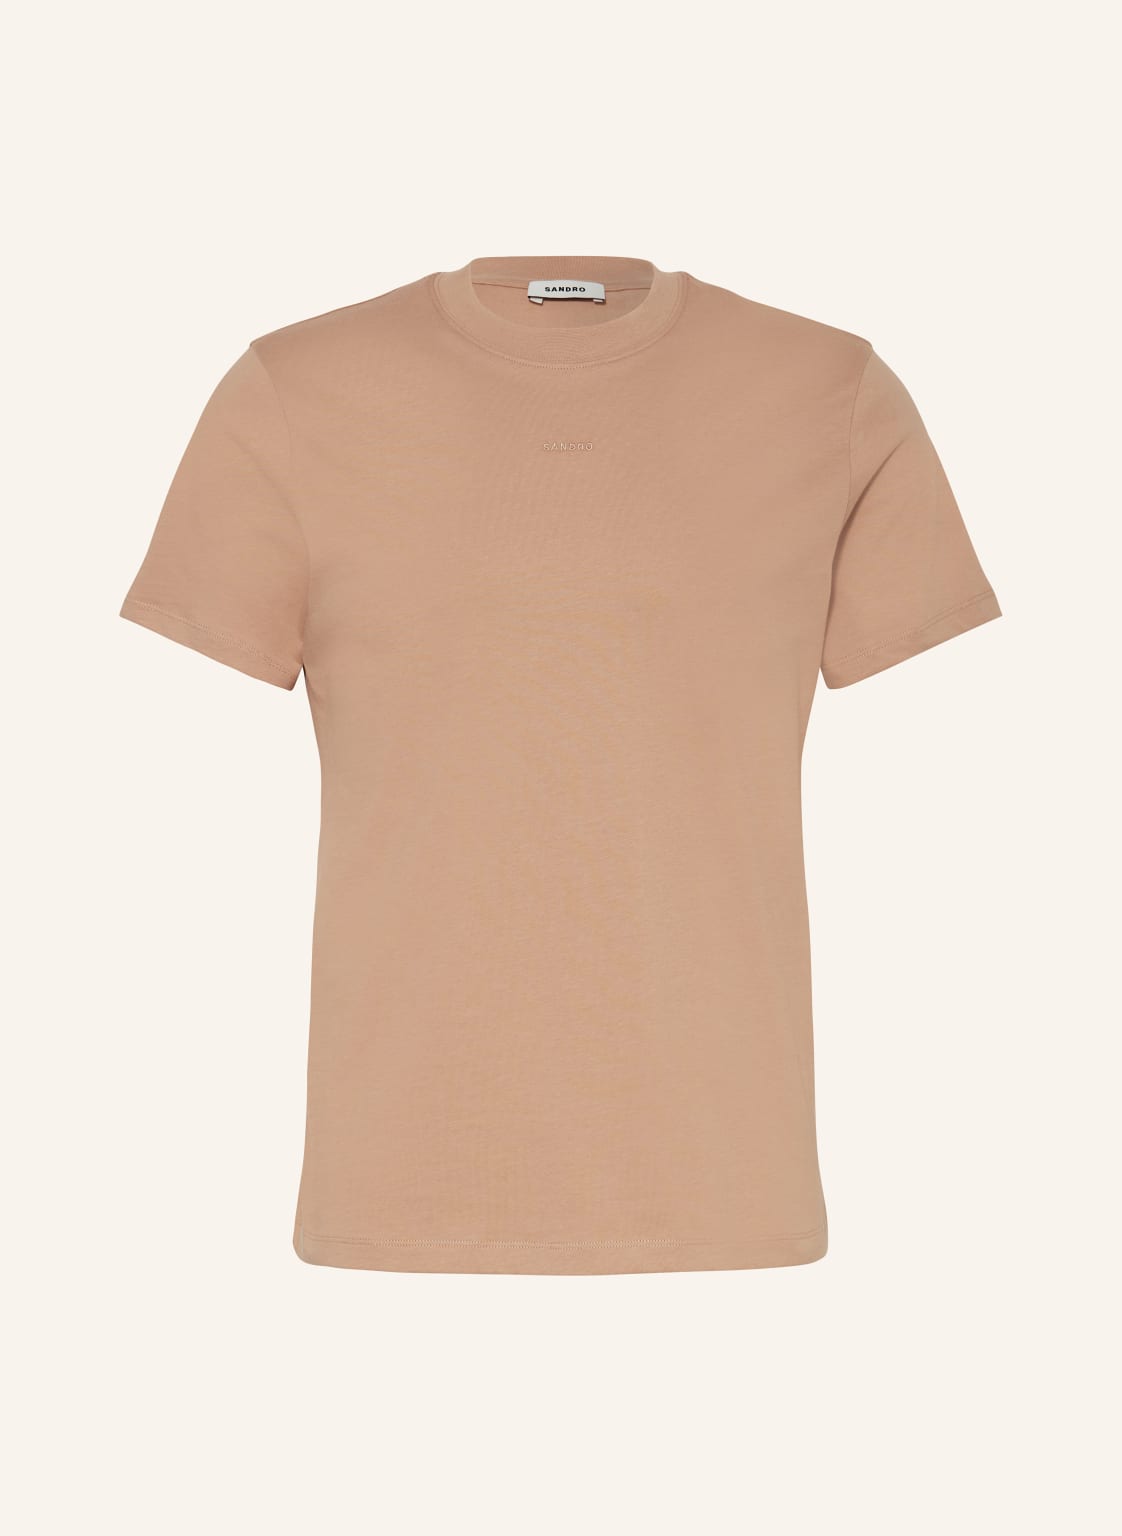 Sandro T-Shirt braun von sandro